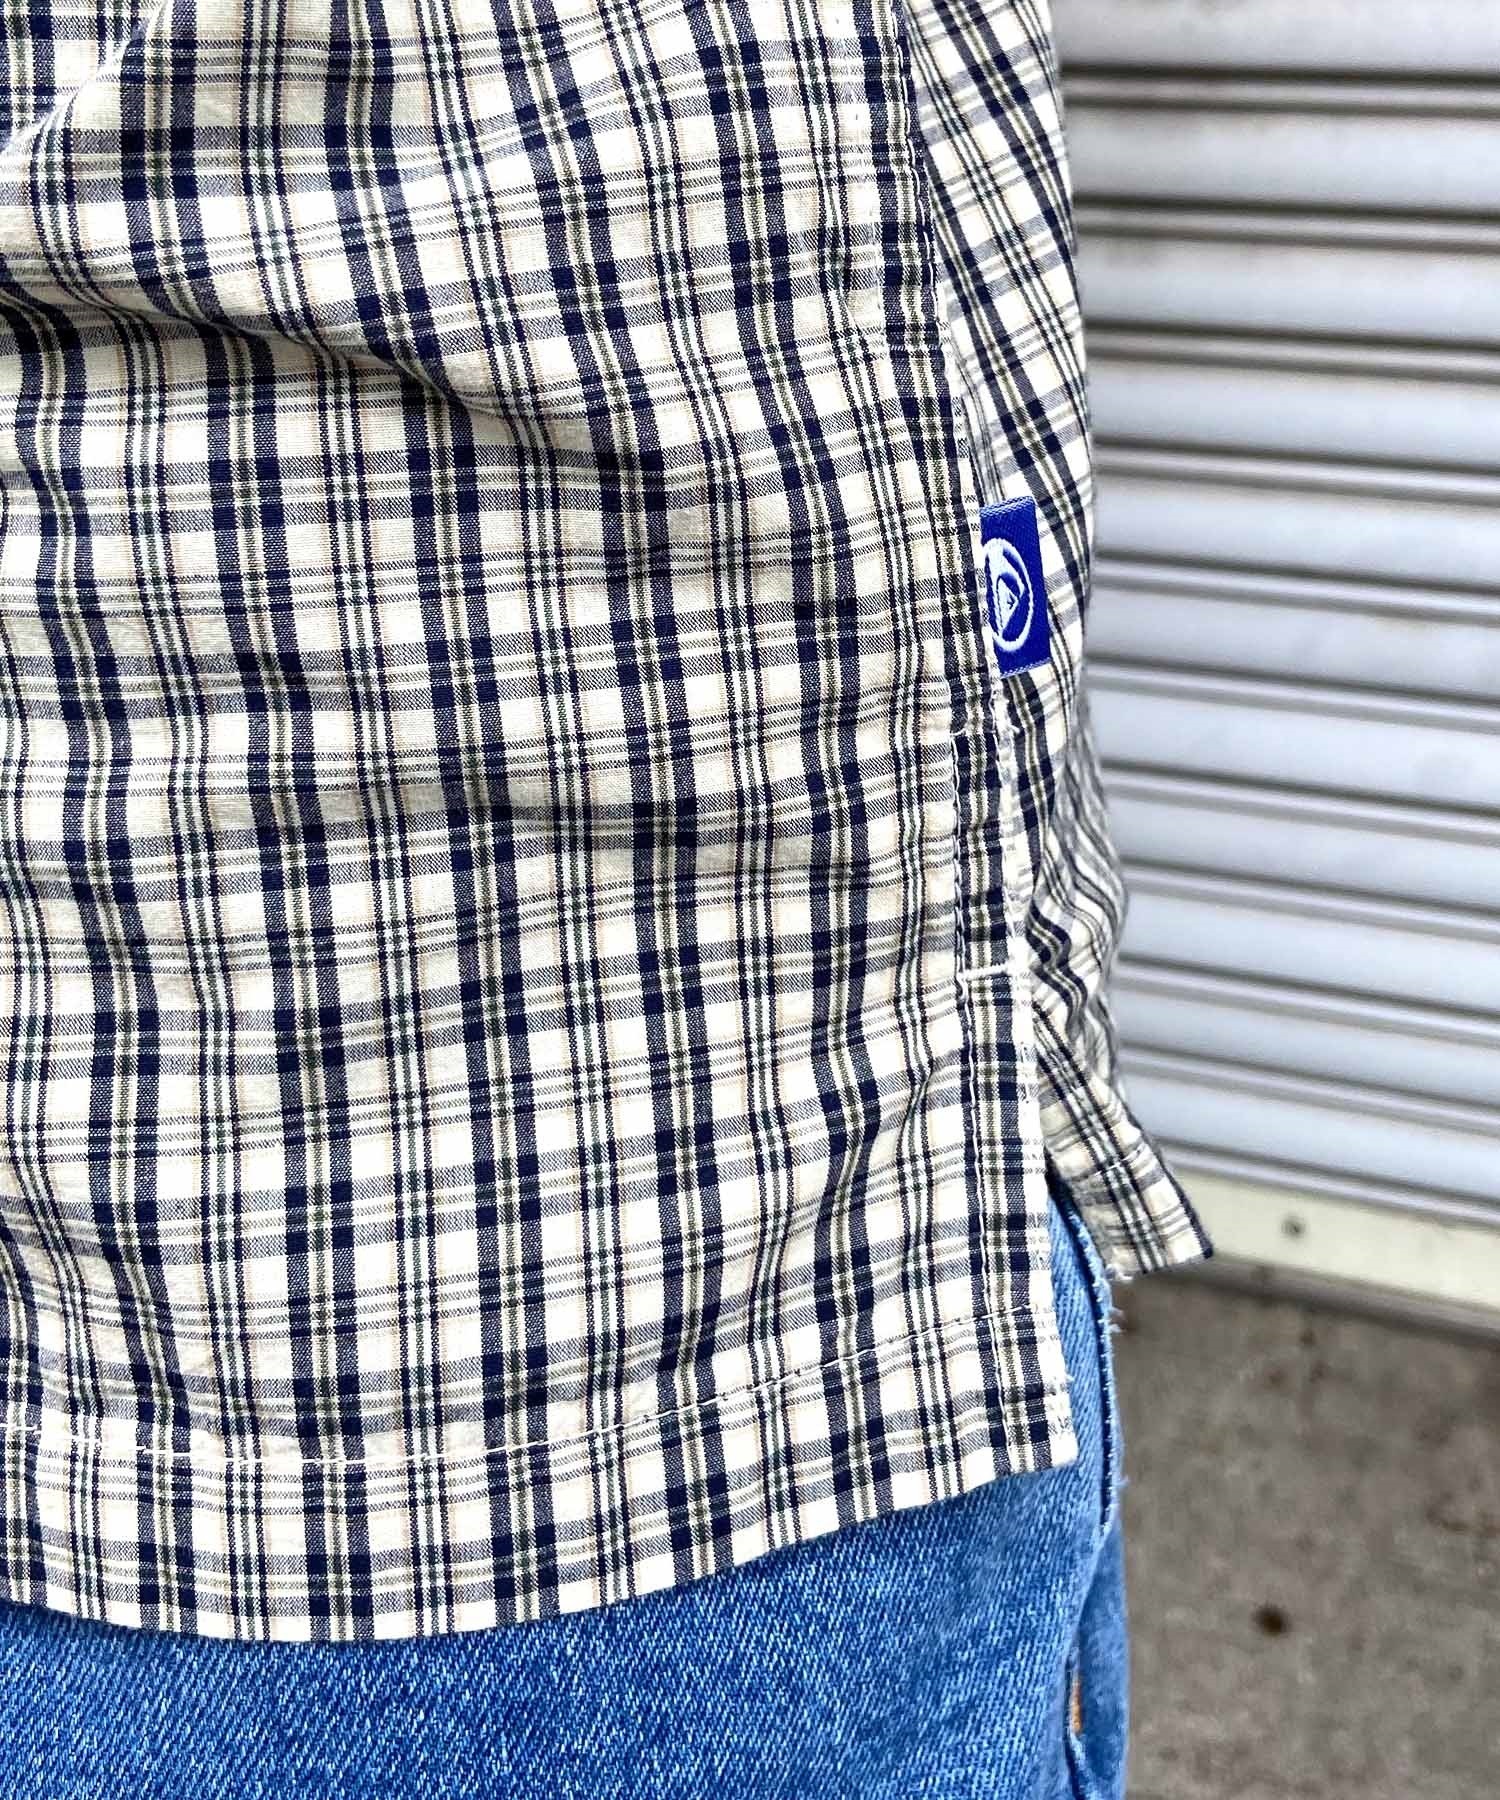 【クーポン対象】QUIKSILVER クイックシルバー メンズ 半袖 シャツ チェック柄 総柄 レギュラーフィット AQYWT03328(CJZ1-M)